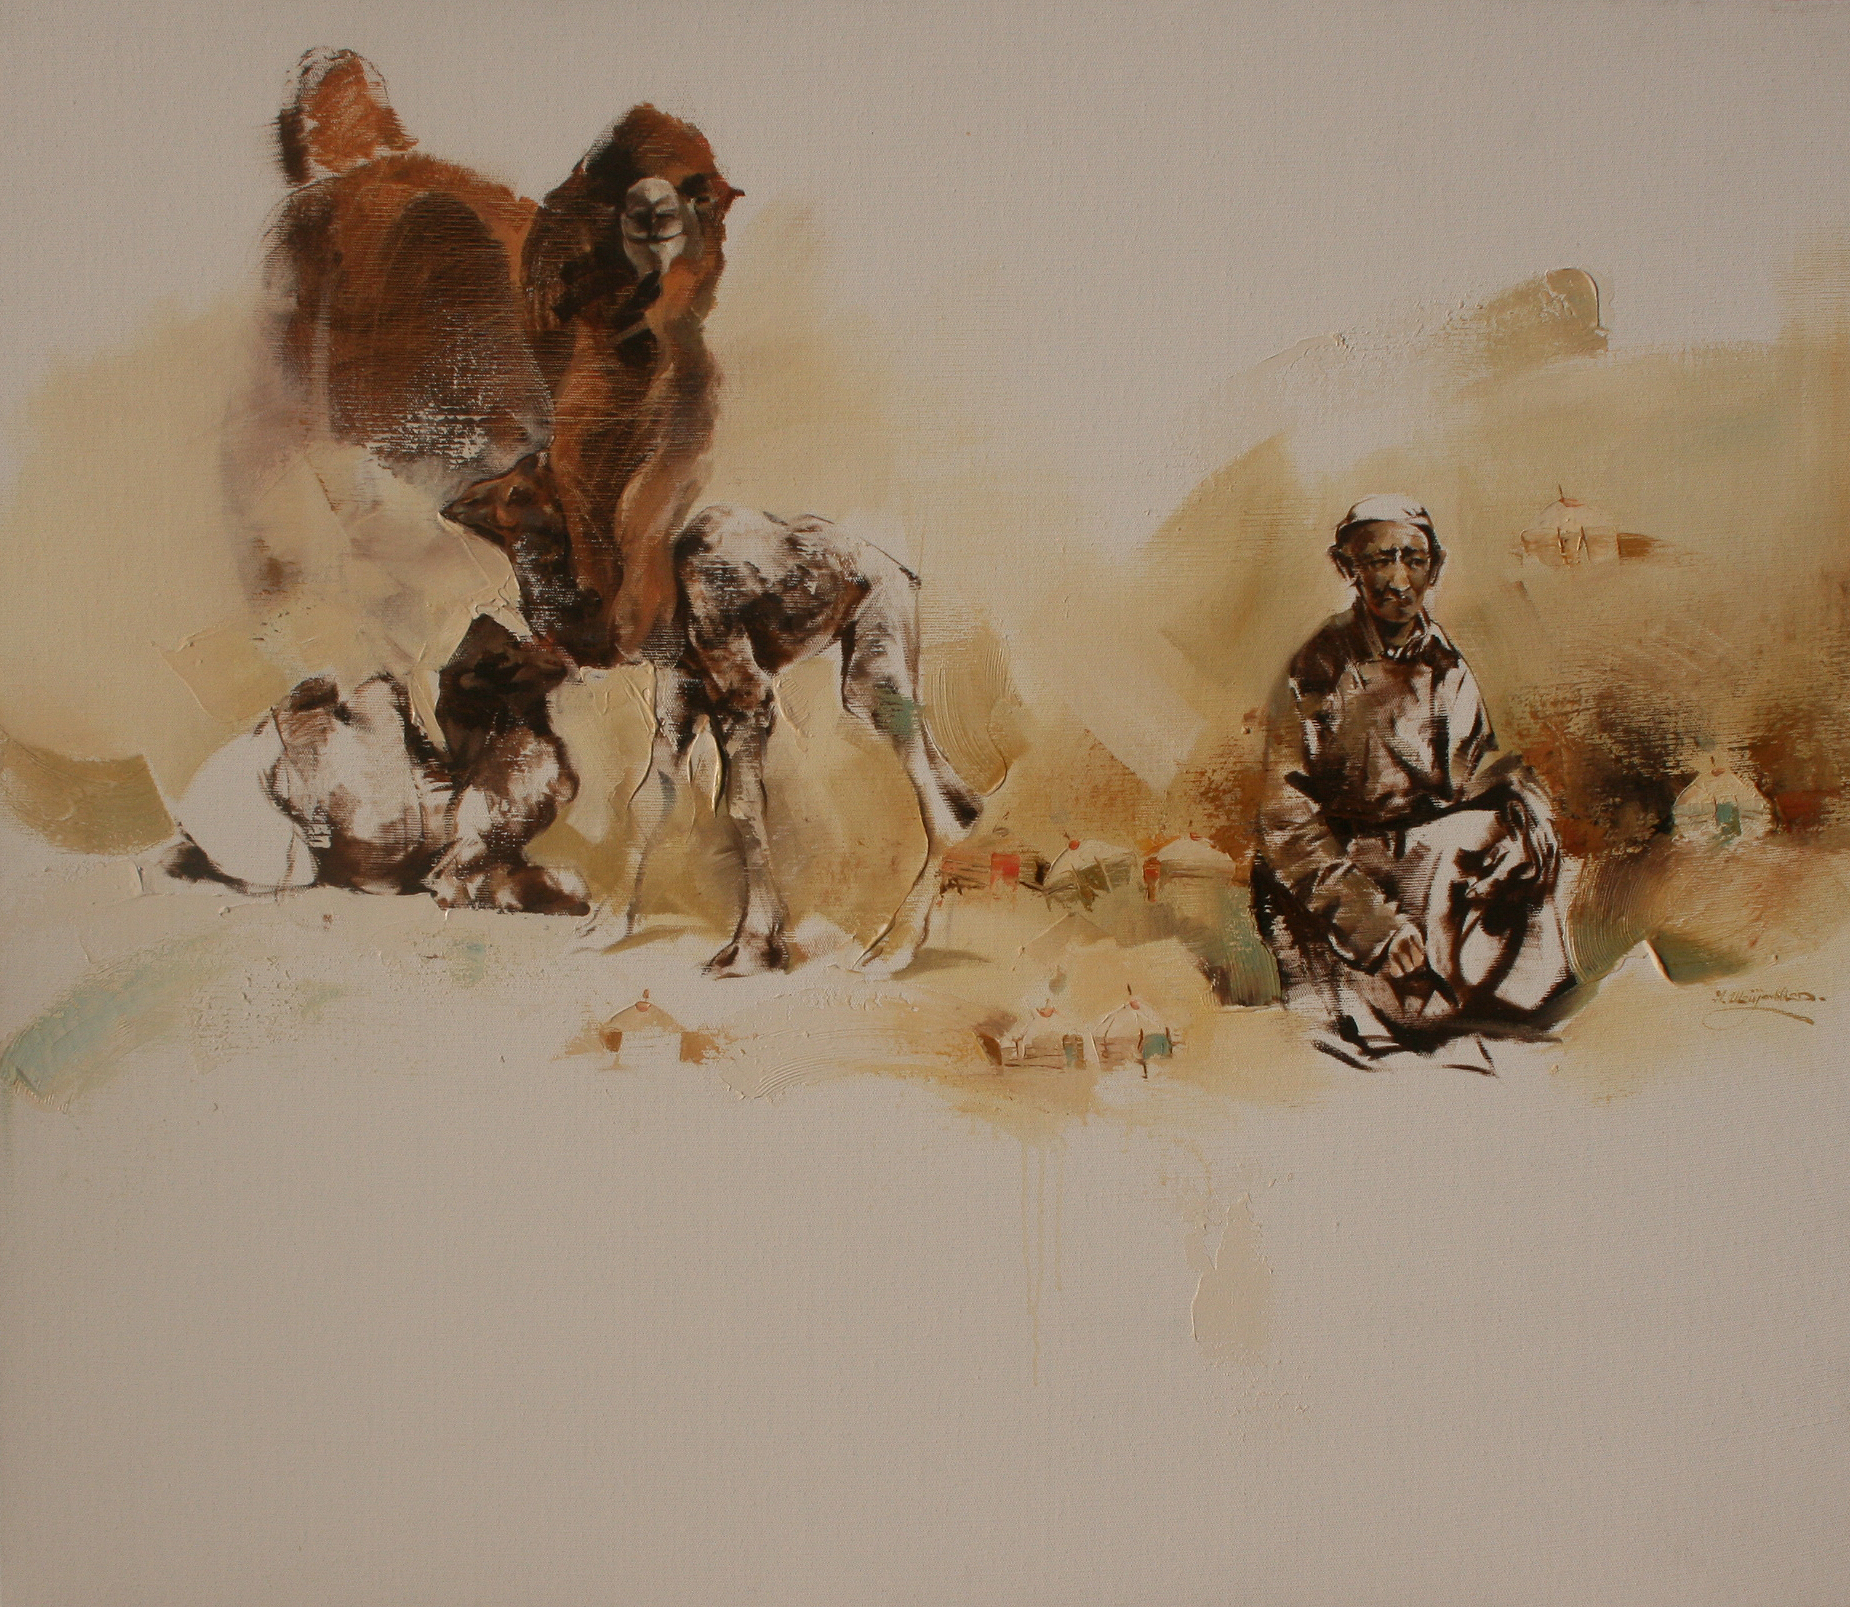 Pintura artística del desierto de Gobi